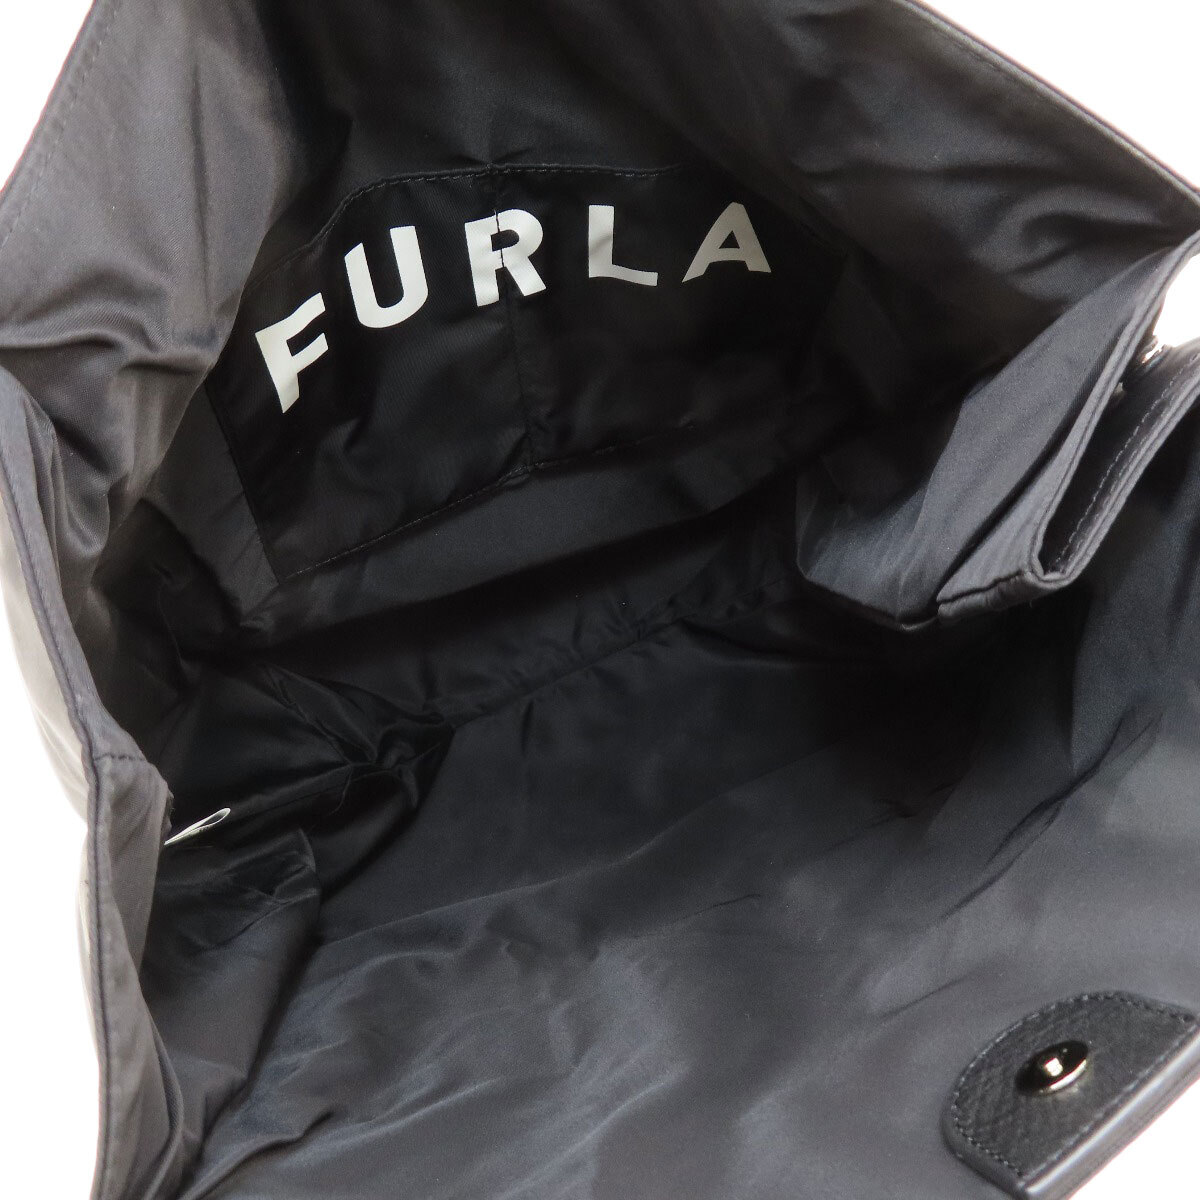 Furla フルラ ロゴ トートバッグ ナイロン素材 レディース 中古_画像5